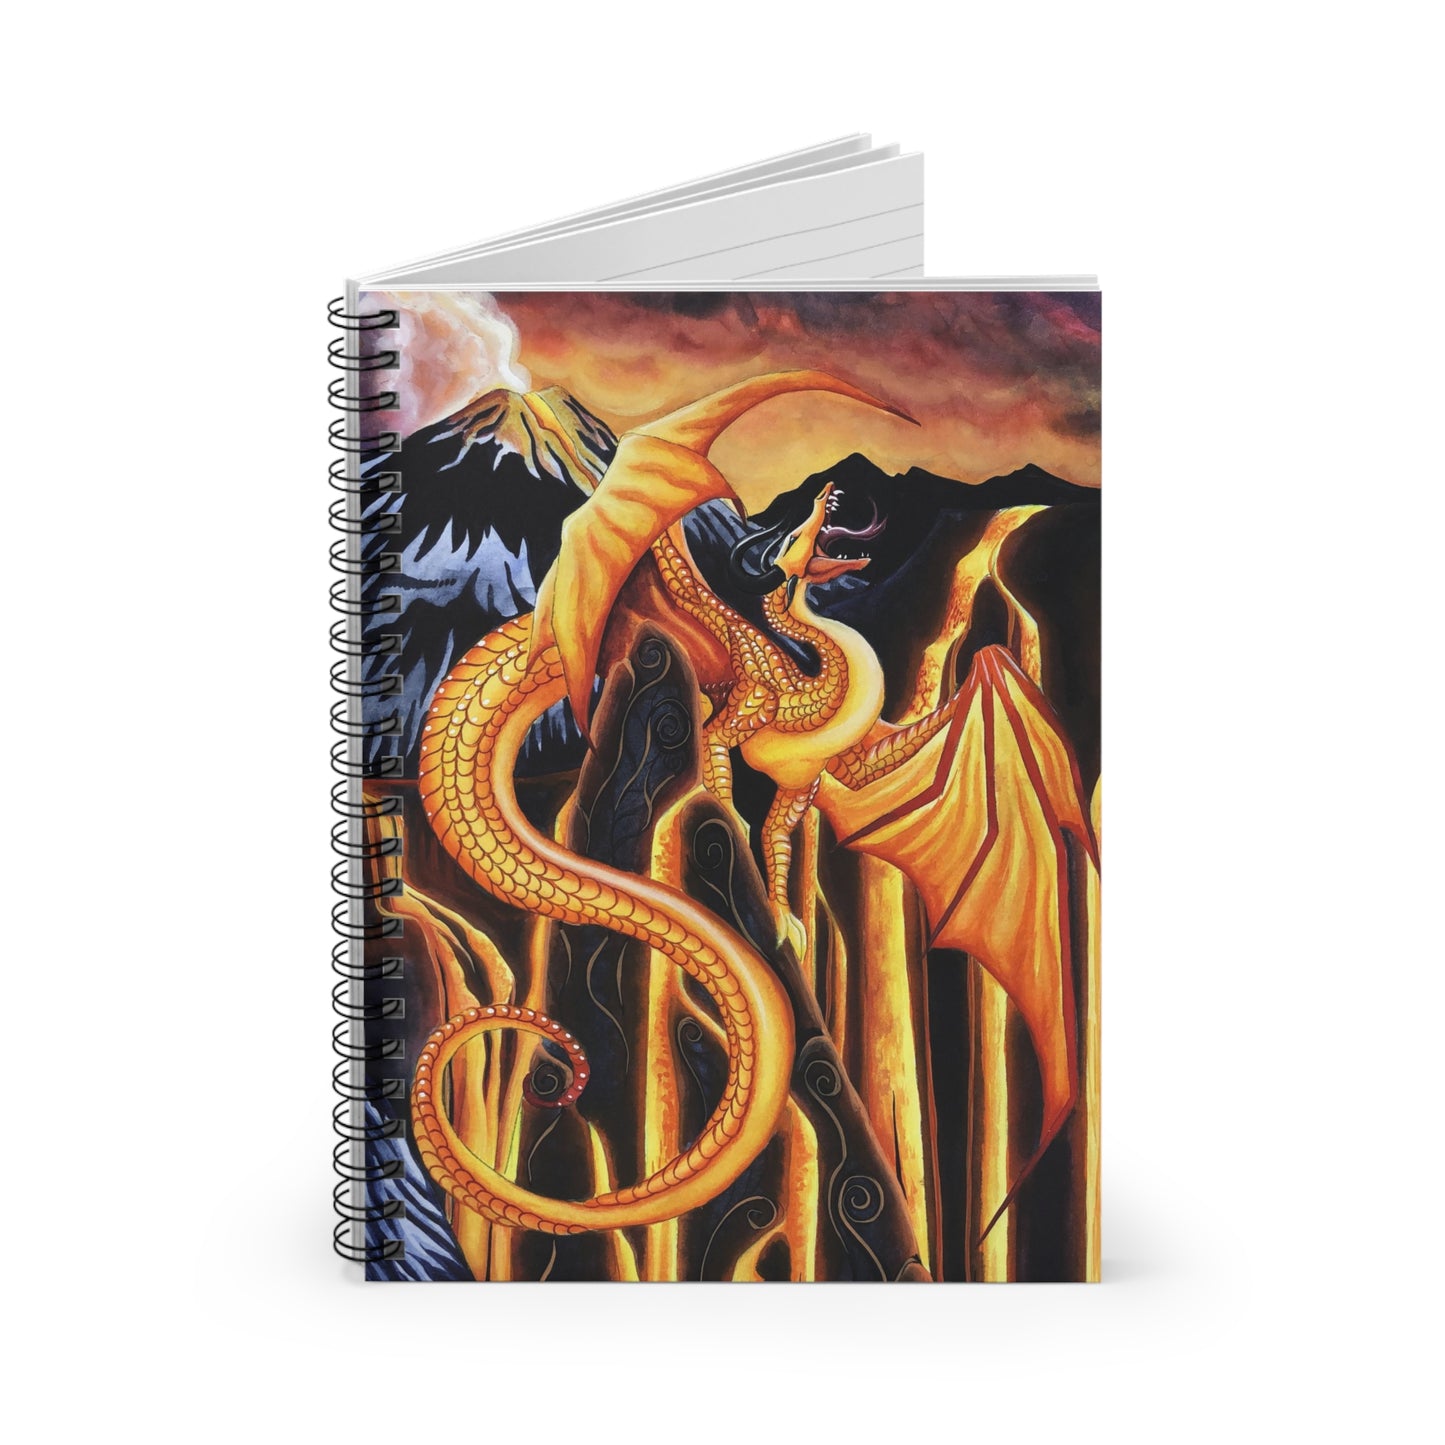 
                  
                    Fire Falls Spiral Notebook - Ruled Line
                  
                